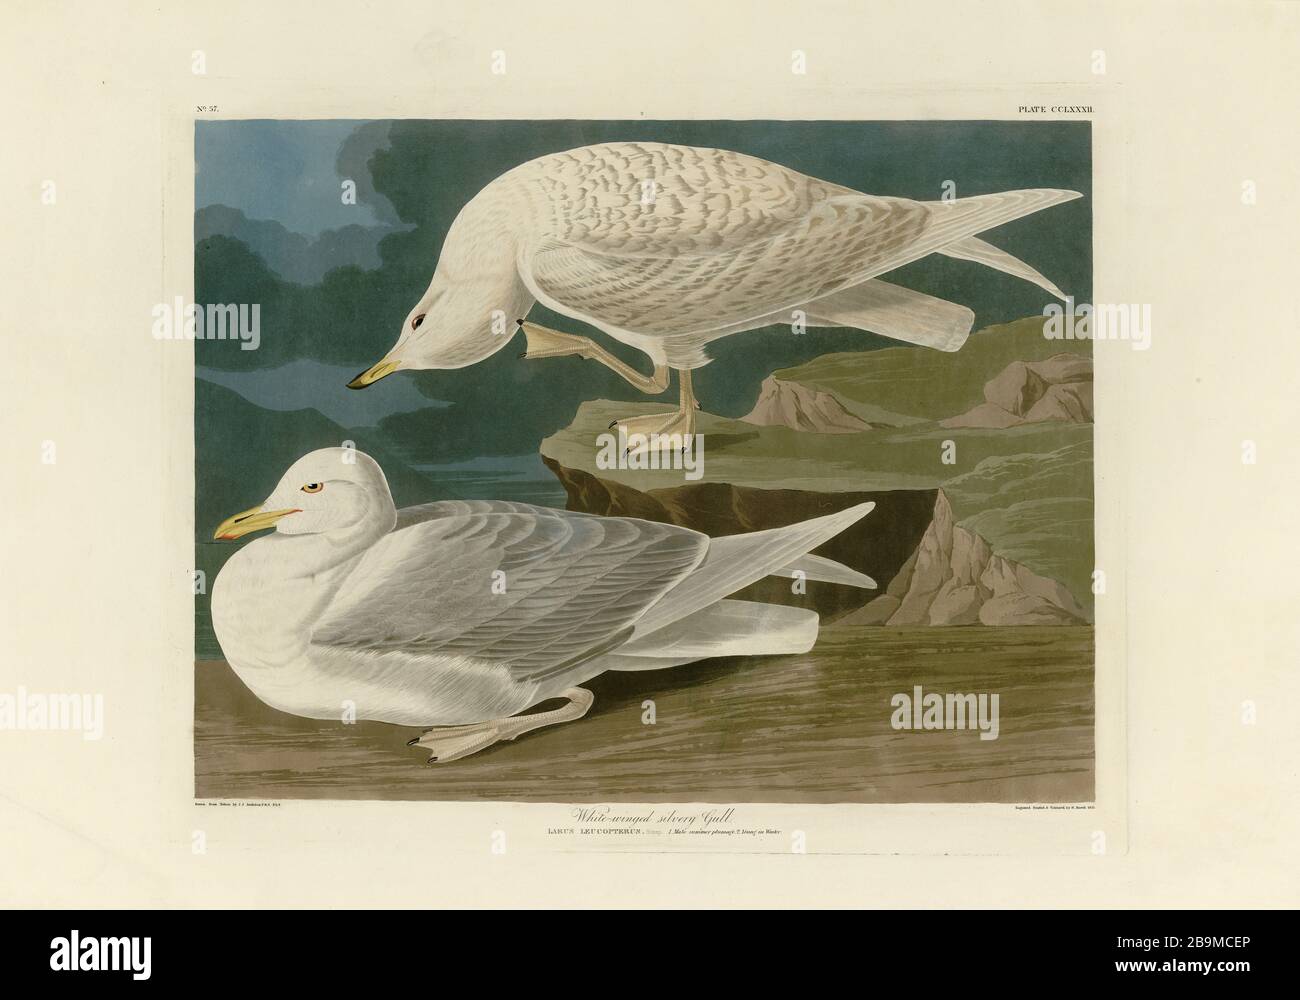 Platte 282 Weiße-geflügelte Silvel-Möwe (Island Gull) The Birds of America (187-184) John James Audubon, sehr hochauflösendes und qualitativ hochwertiges redigtes Bild Stockfoto